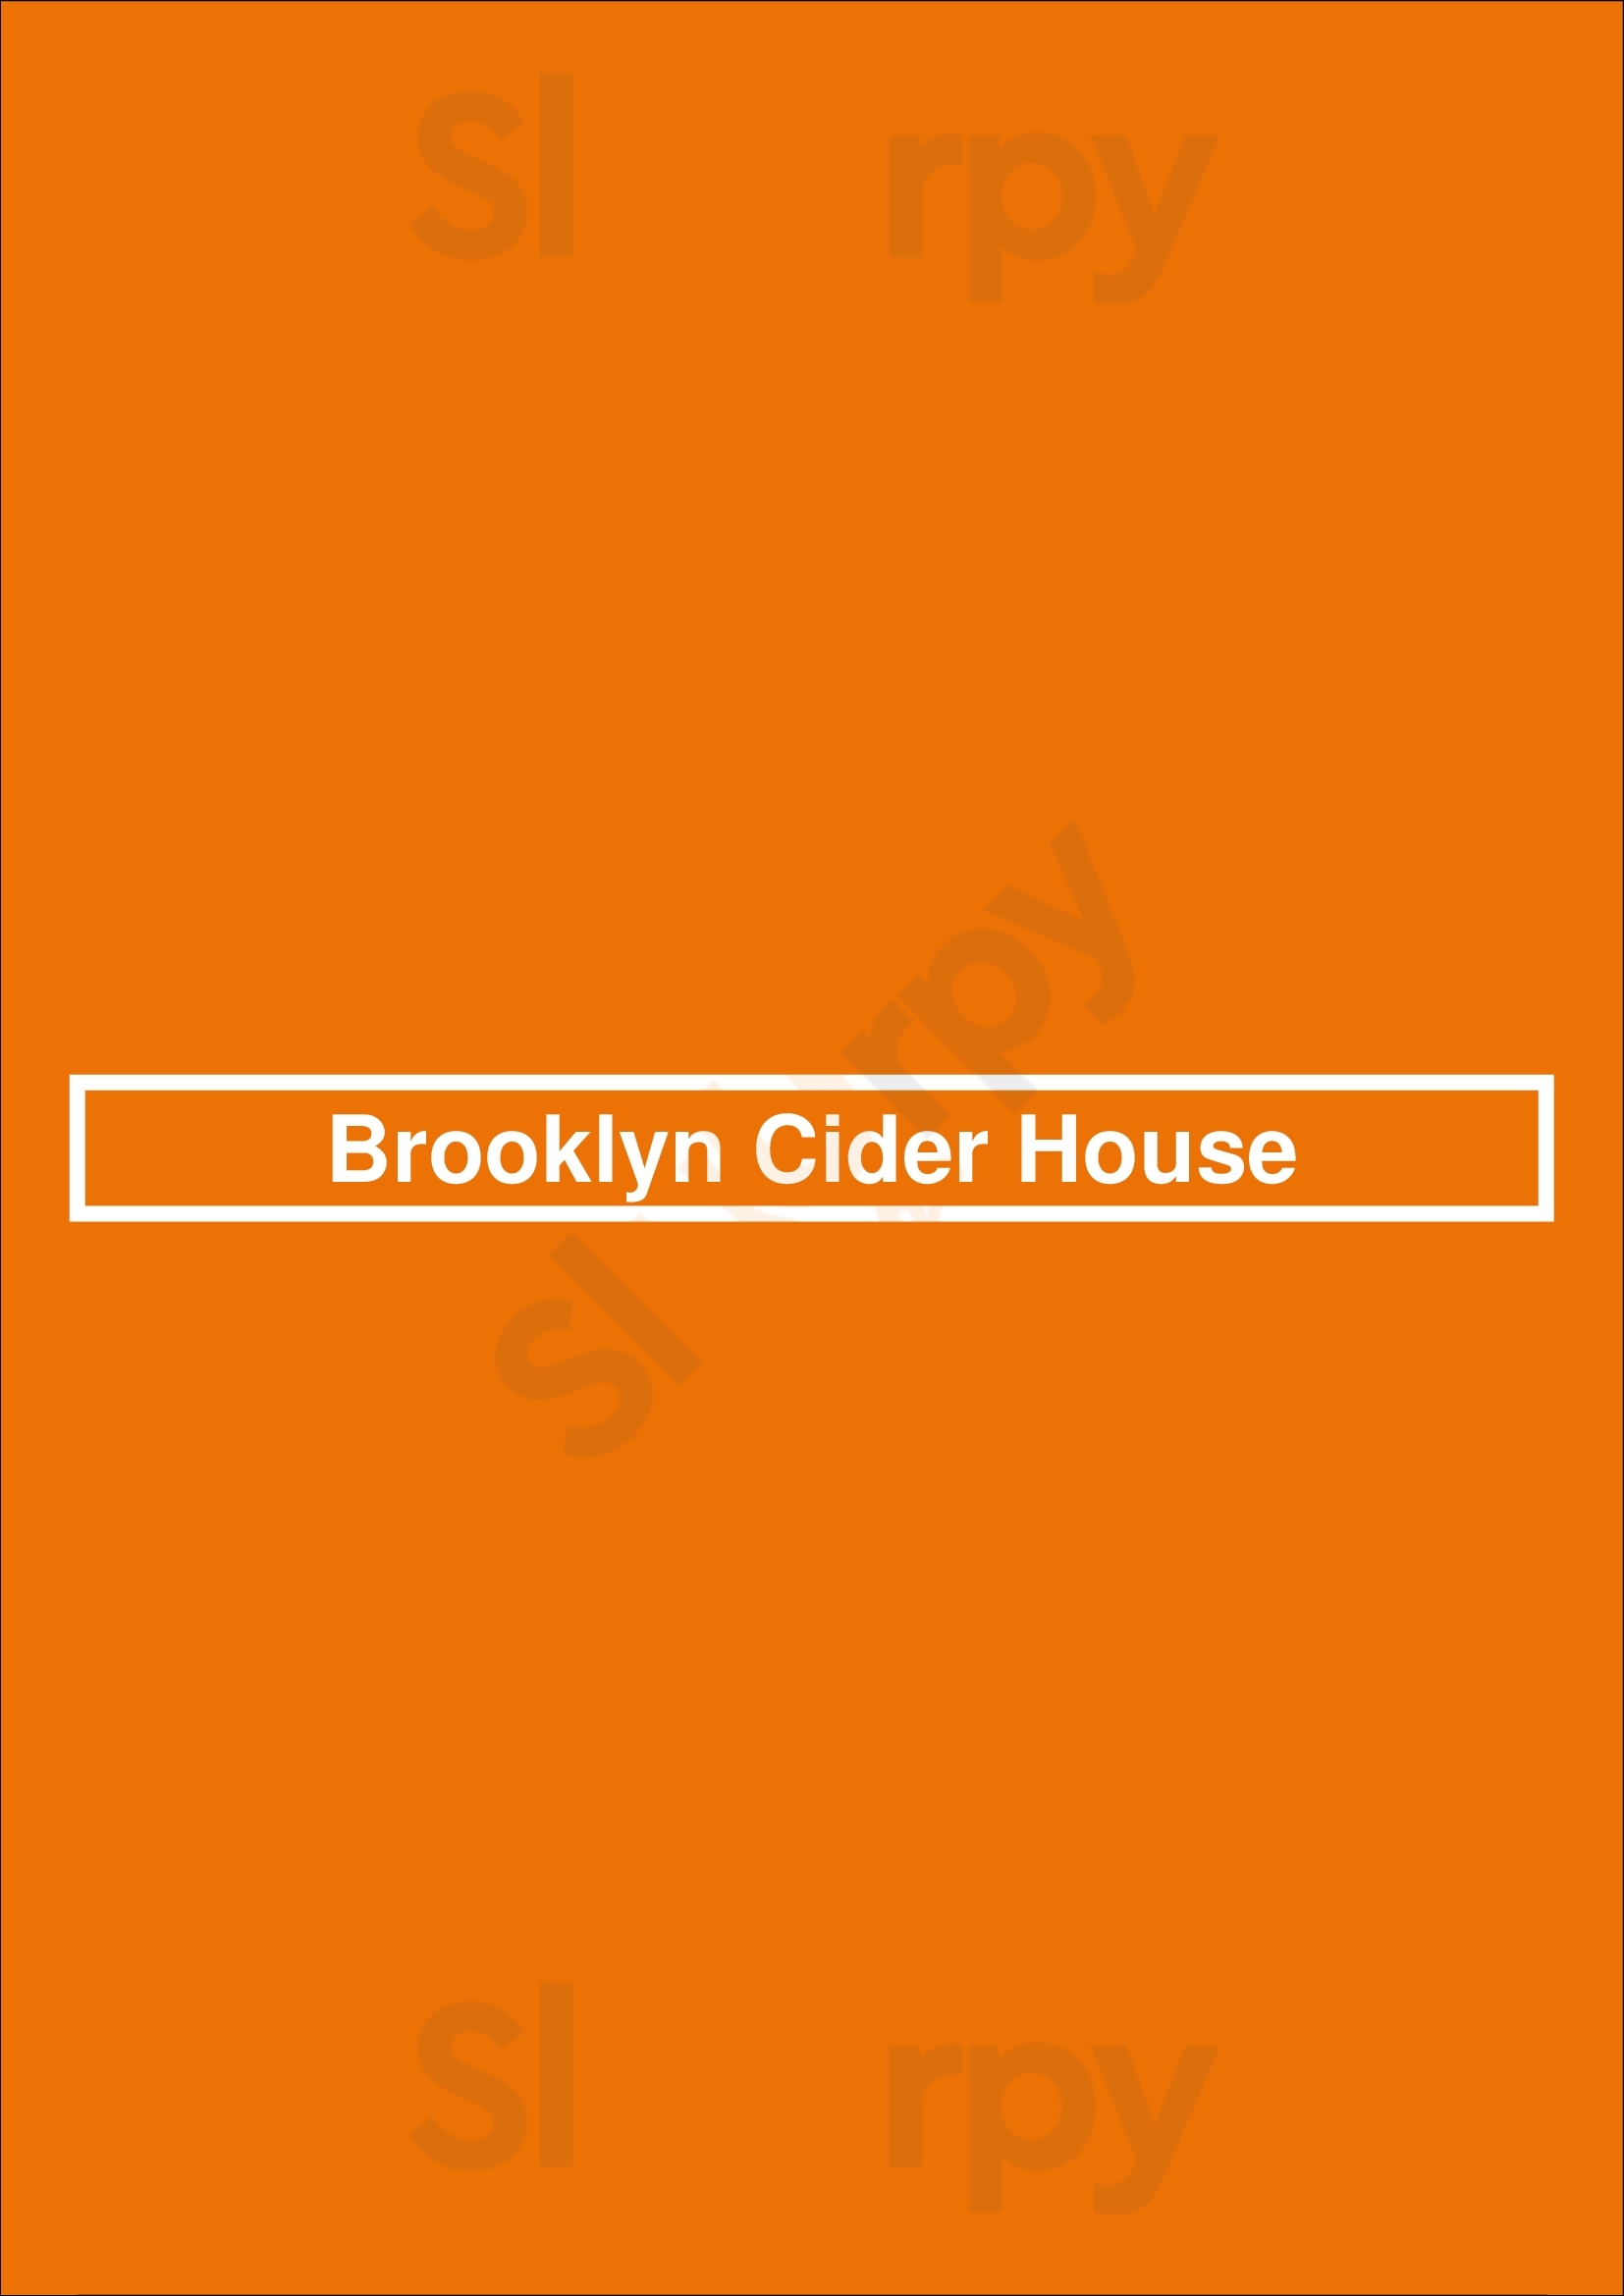 Brooklyn Cider House Brooklyn Menu - 1